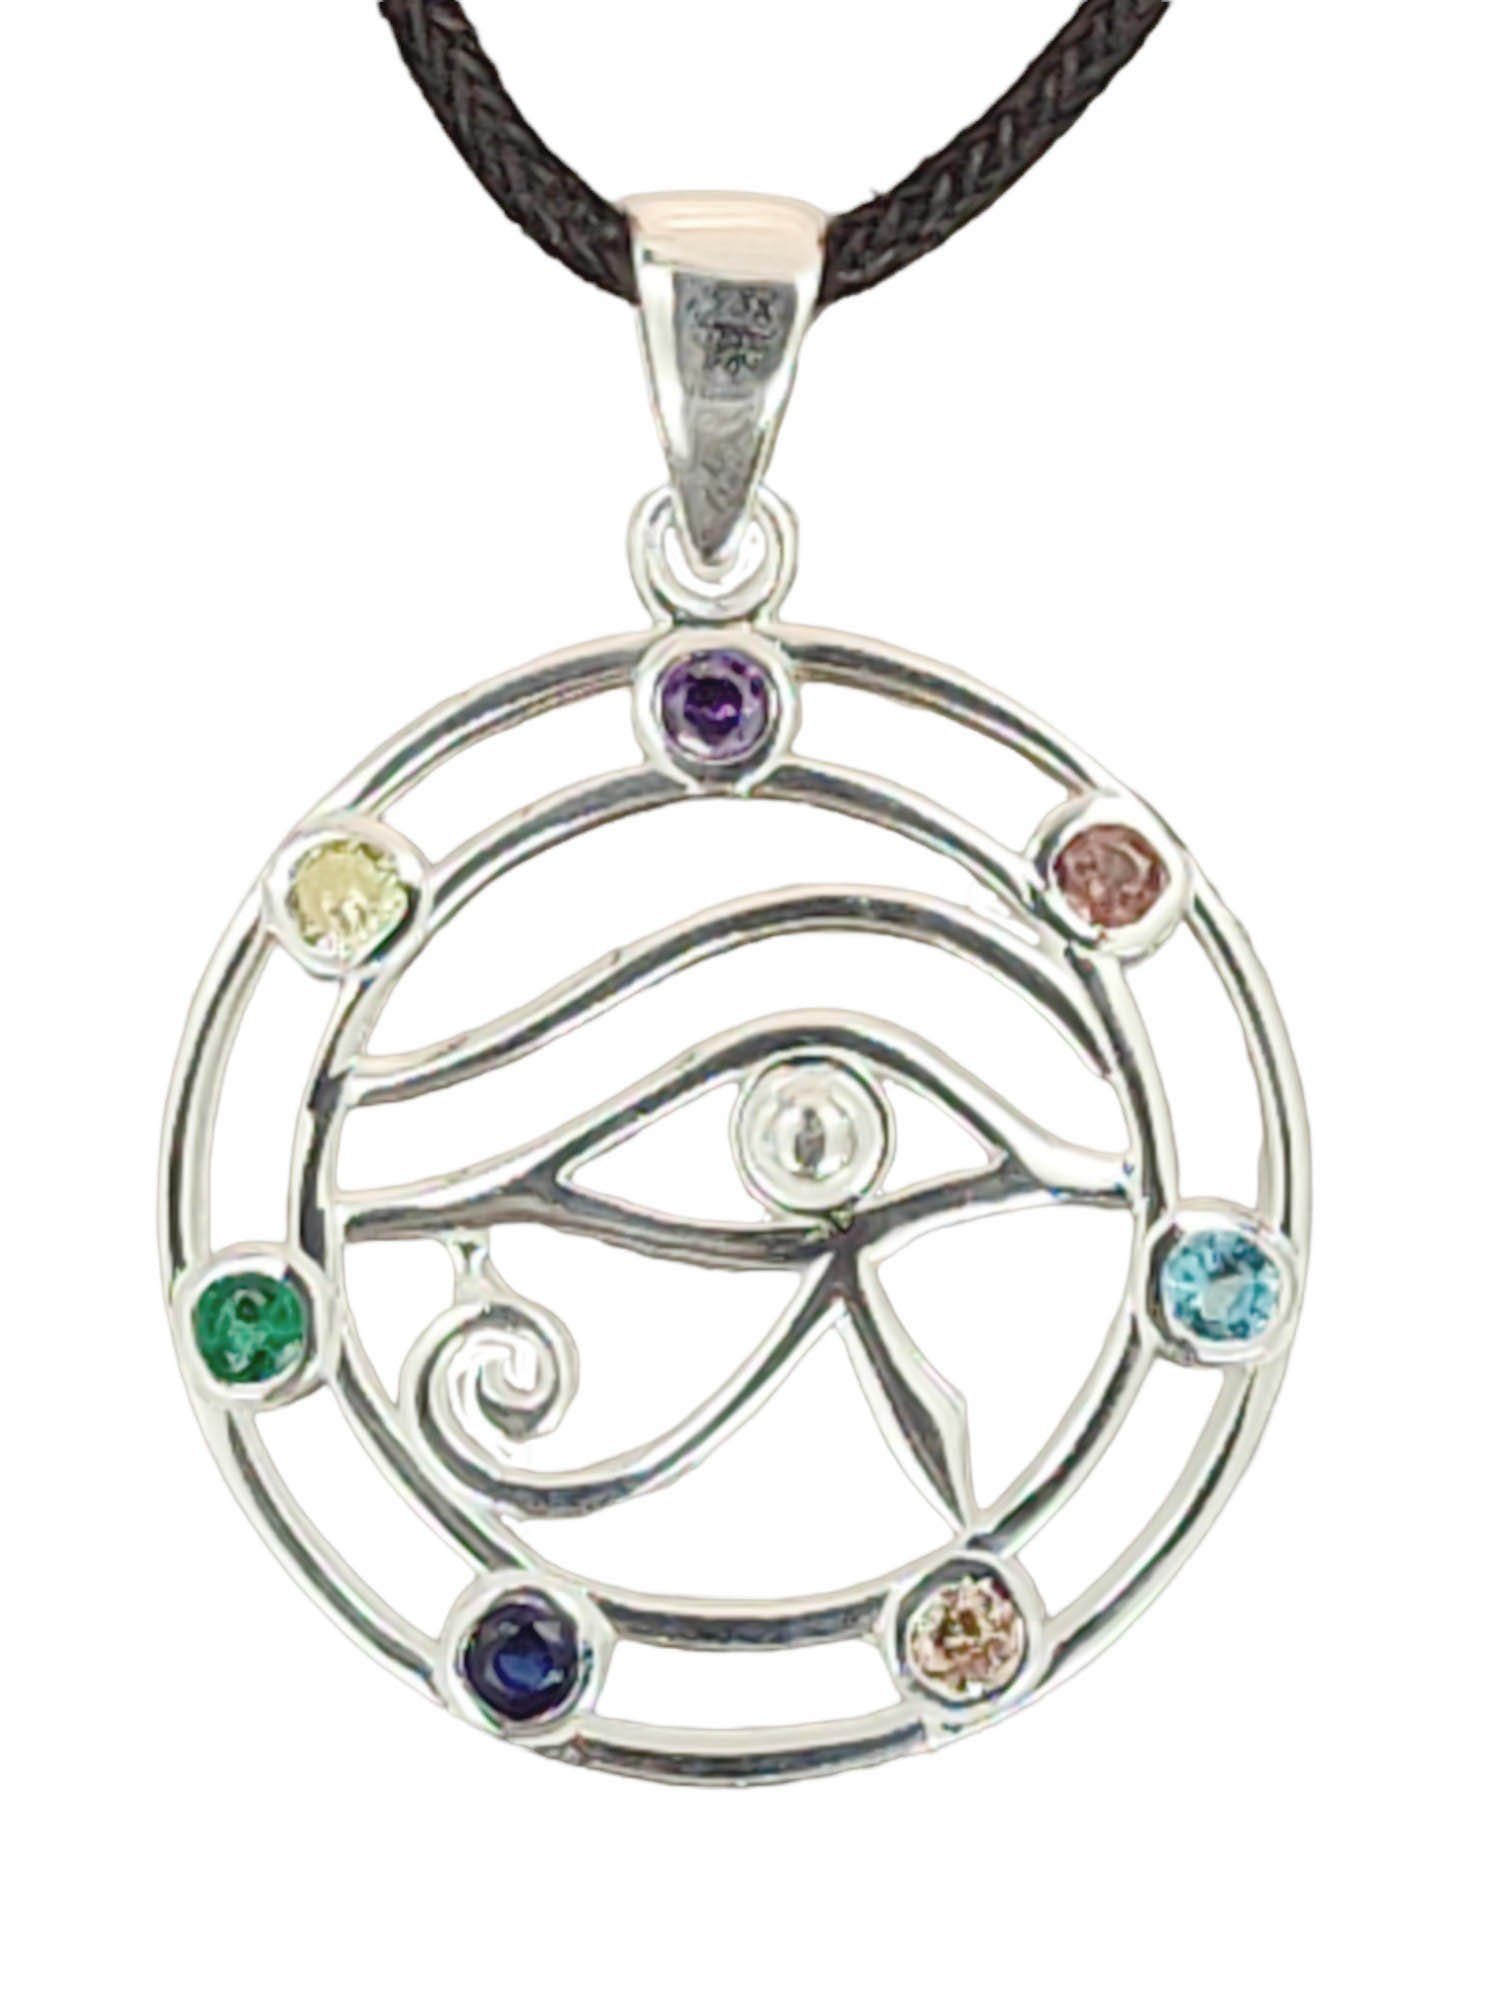 Silber 925 of 417 Nr. Amulett Dreieck Kiss Horus Auge Leather Schutz Kettenanhänger Horusauge Anhänger des